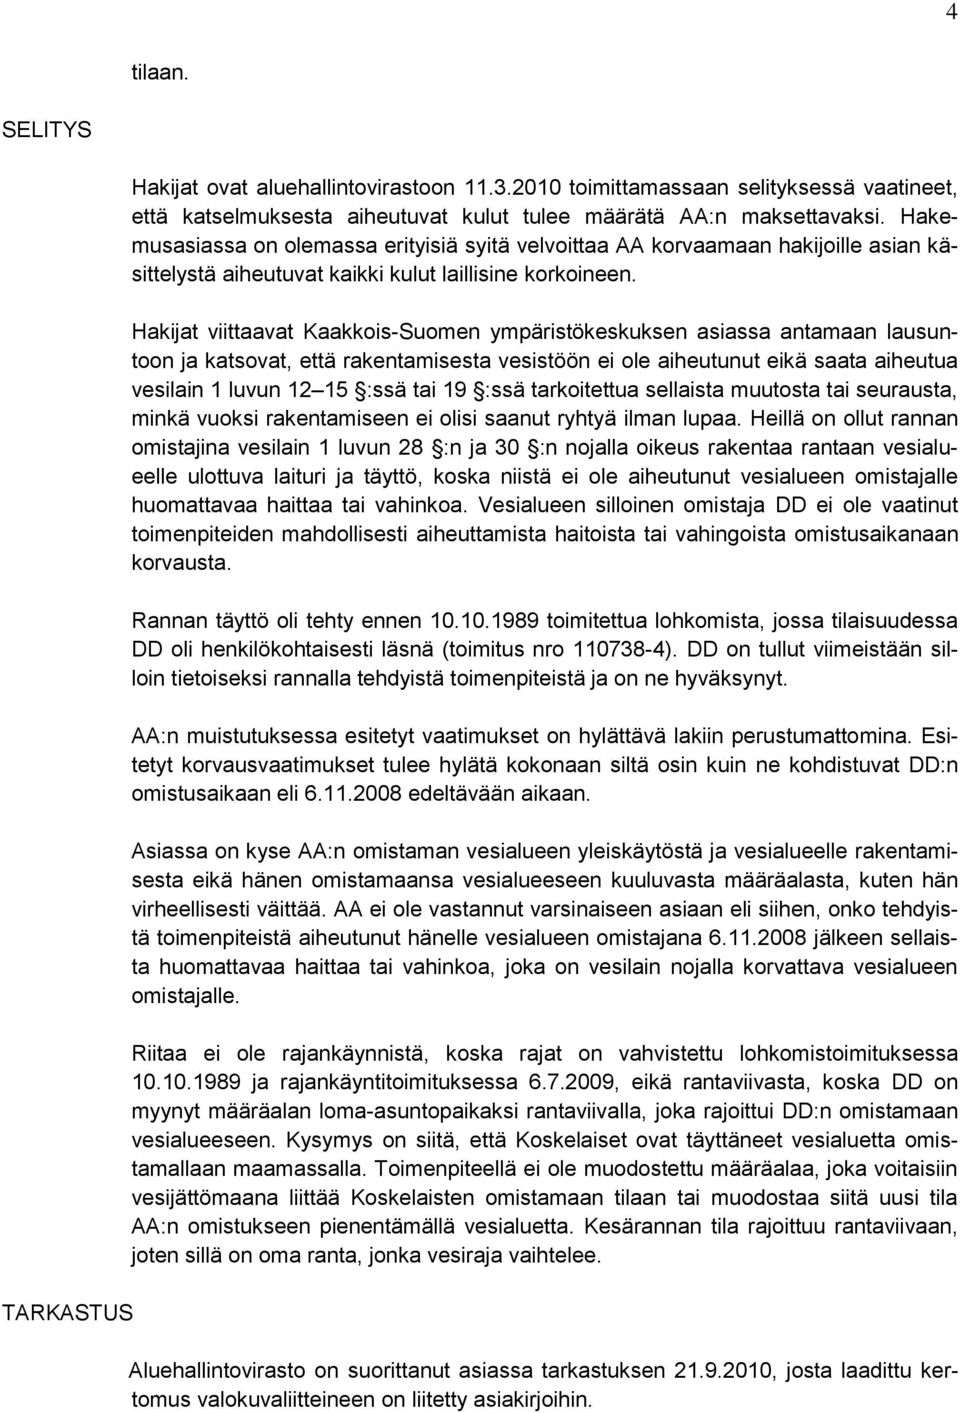 Hakijat viittaavat Kaakkois-Suomen ympäristökeskuksen asiassa antamaan lausuntoon ja katsovat, että rakentamisesta vesistöön ei ole aiheutunut eikä saata aiheutua vesilain 1 luvun 12 15 :ssä tai 19